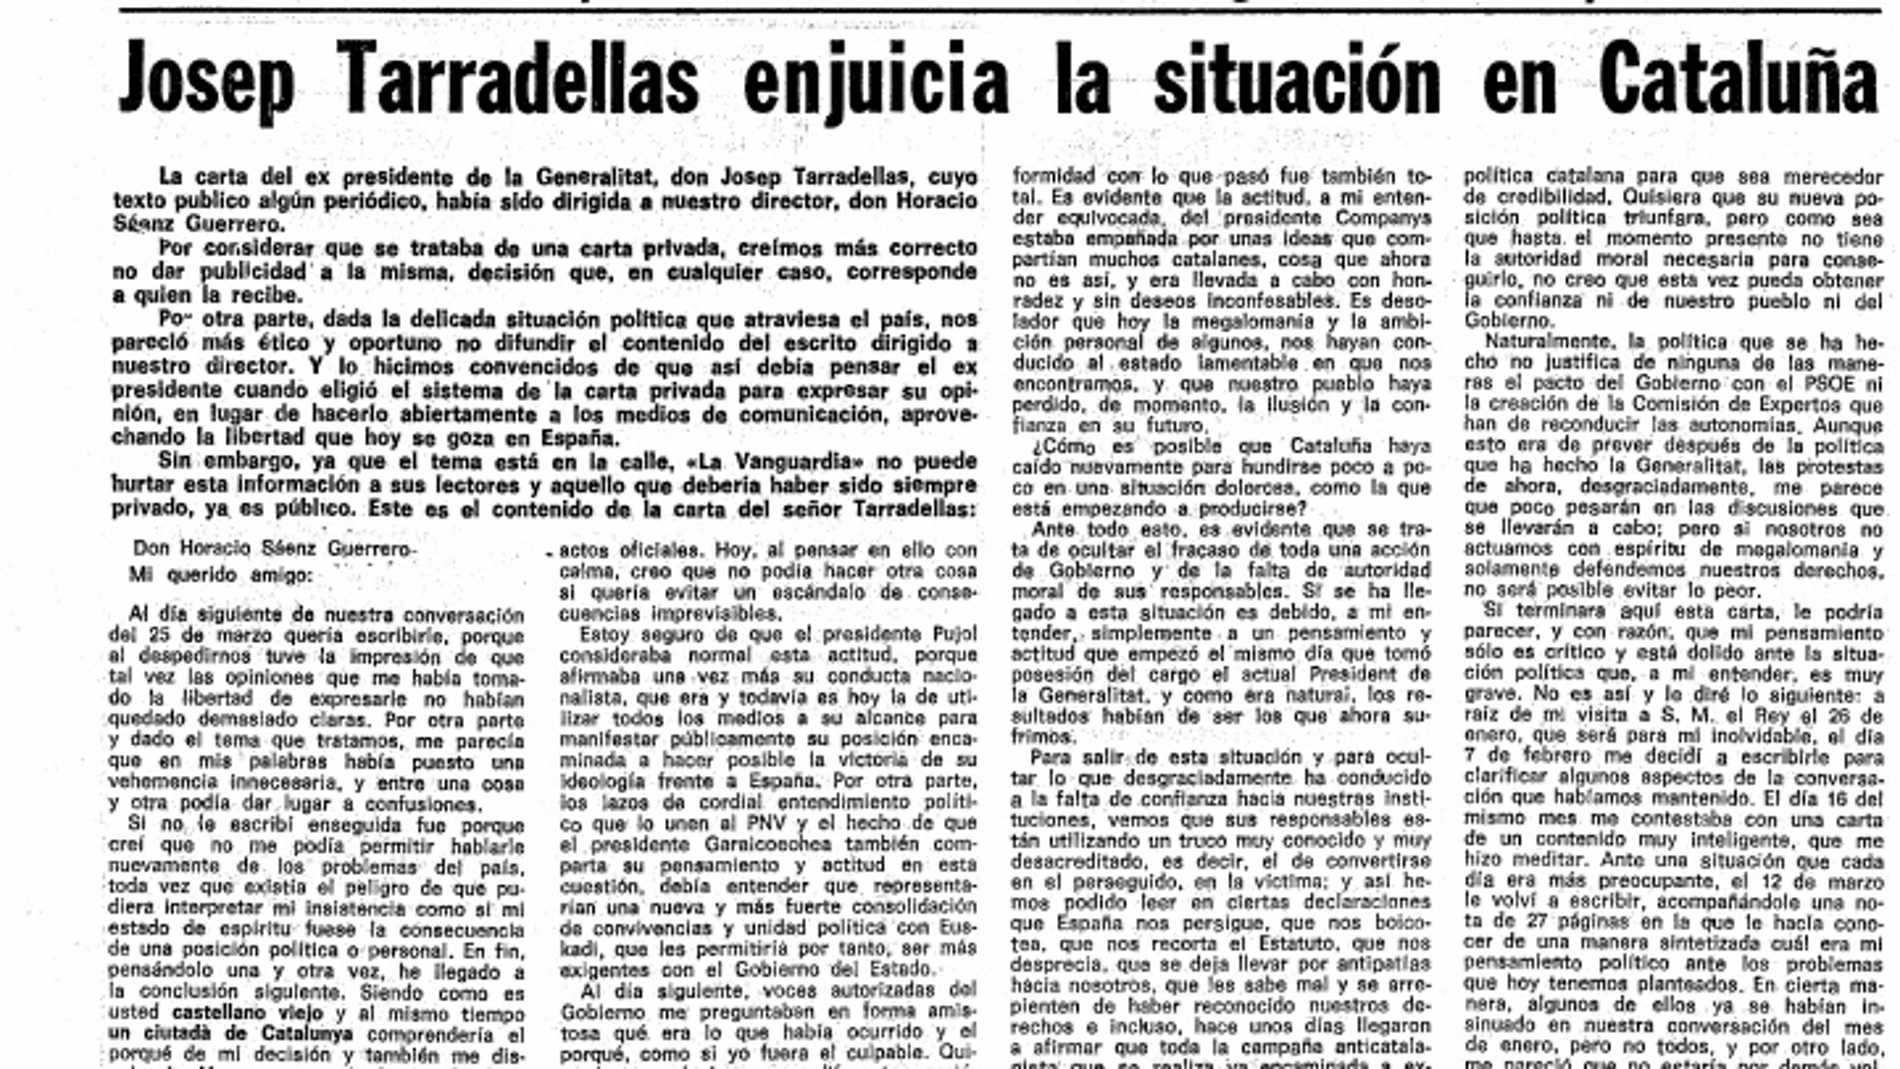 Tarradellas avisó: «La megalomanía y ambición personal nos han conducido a este estado lamentable»